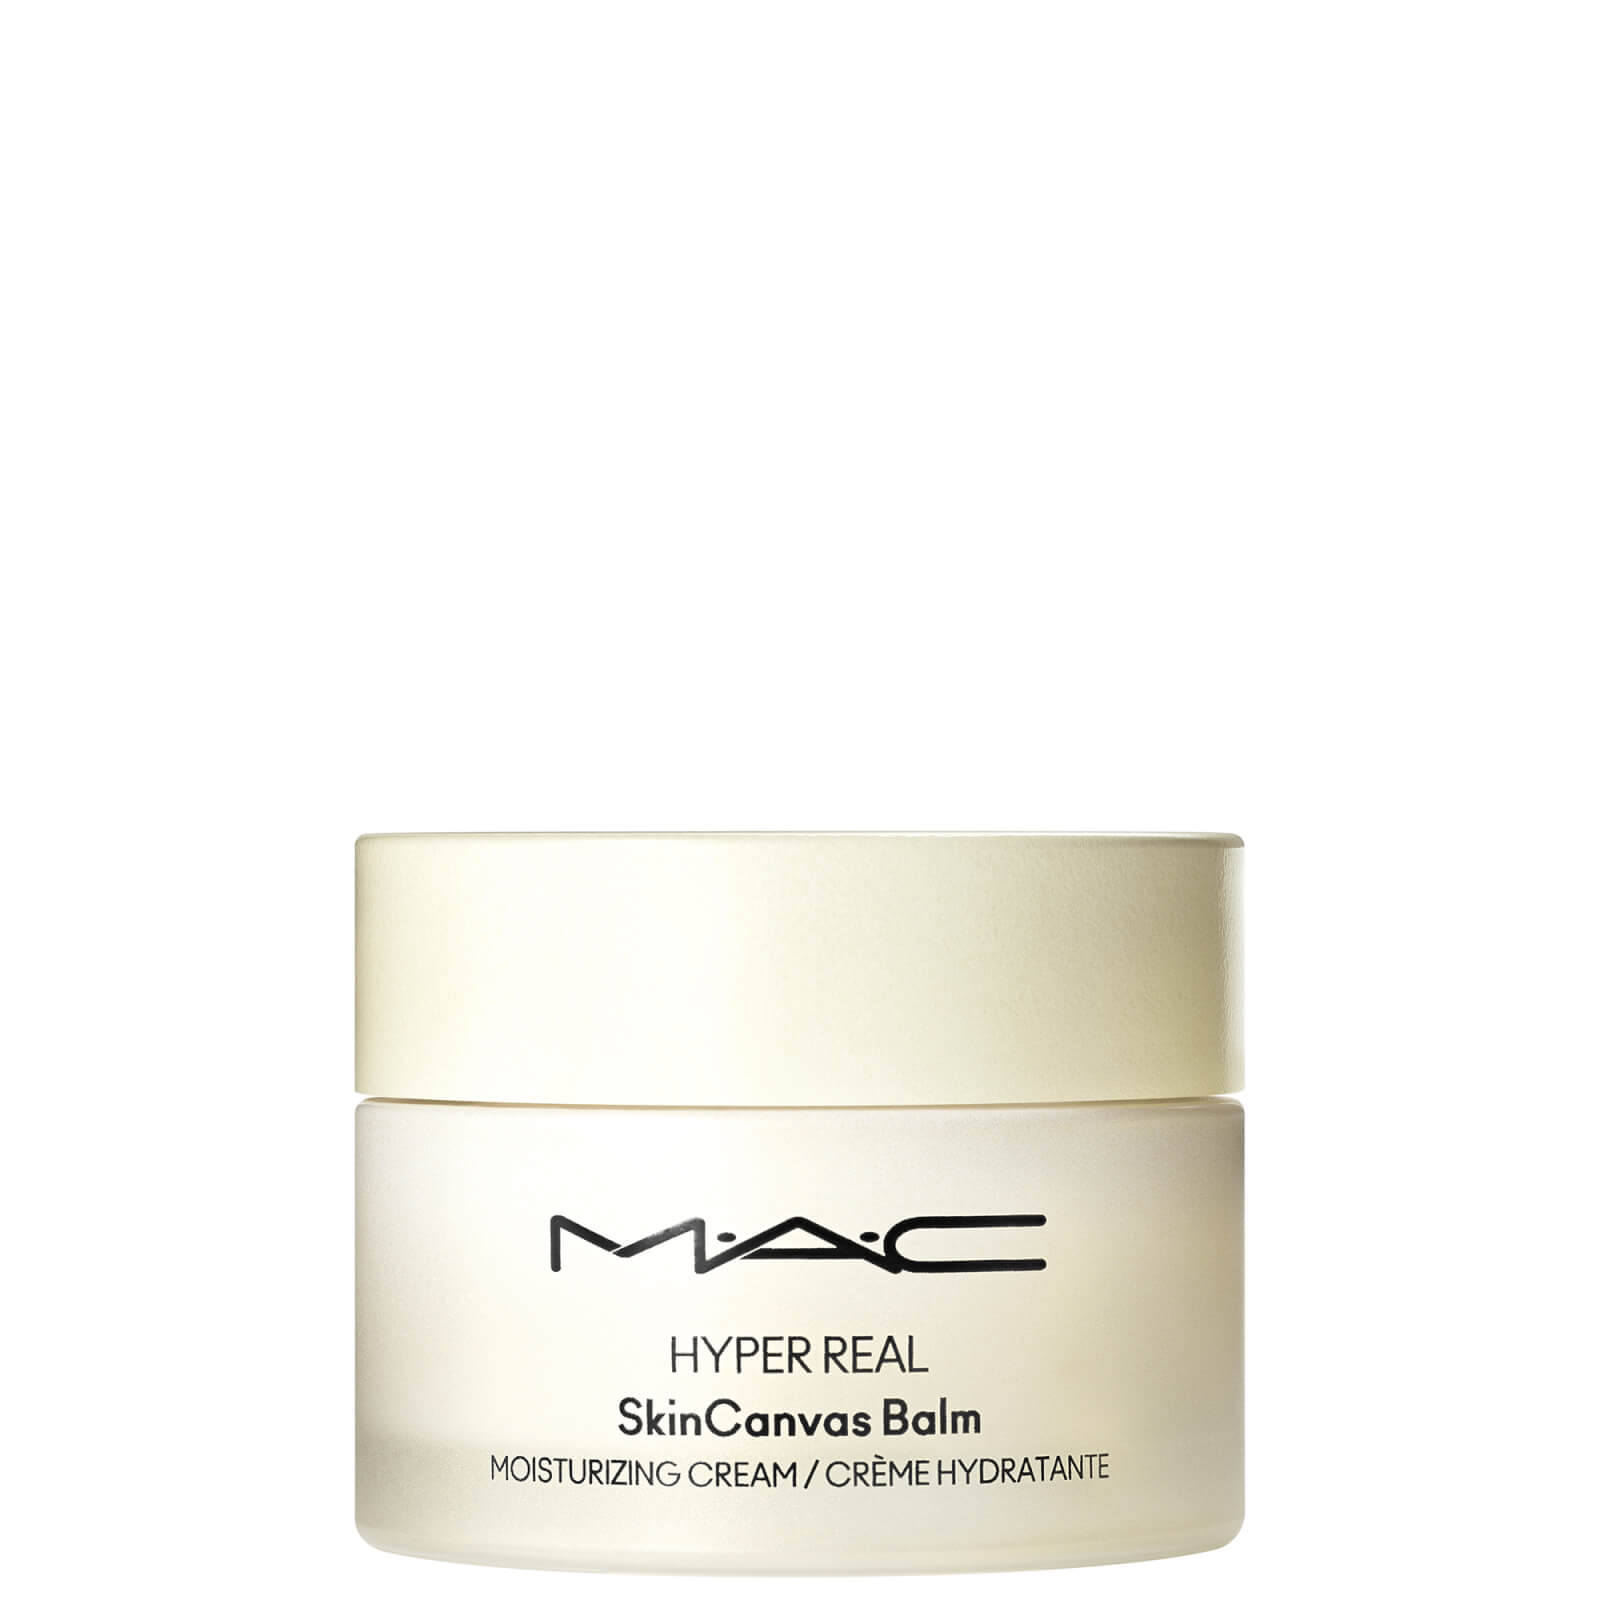 M.a.c Hydraterende Creme Herstellend Licht  - Hyper Real Skincanvas Balm™ Moisturizing Cream Hydraterende Crème - Herstellend & Licht  - 50 ML